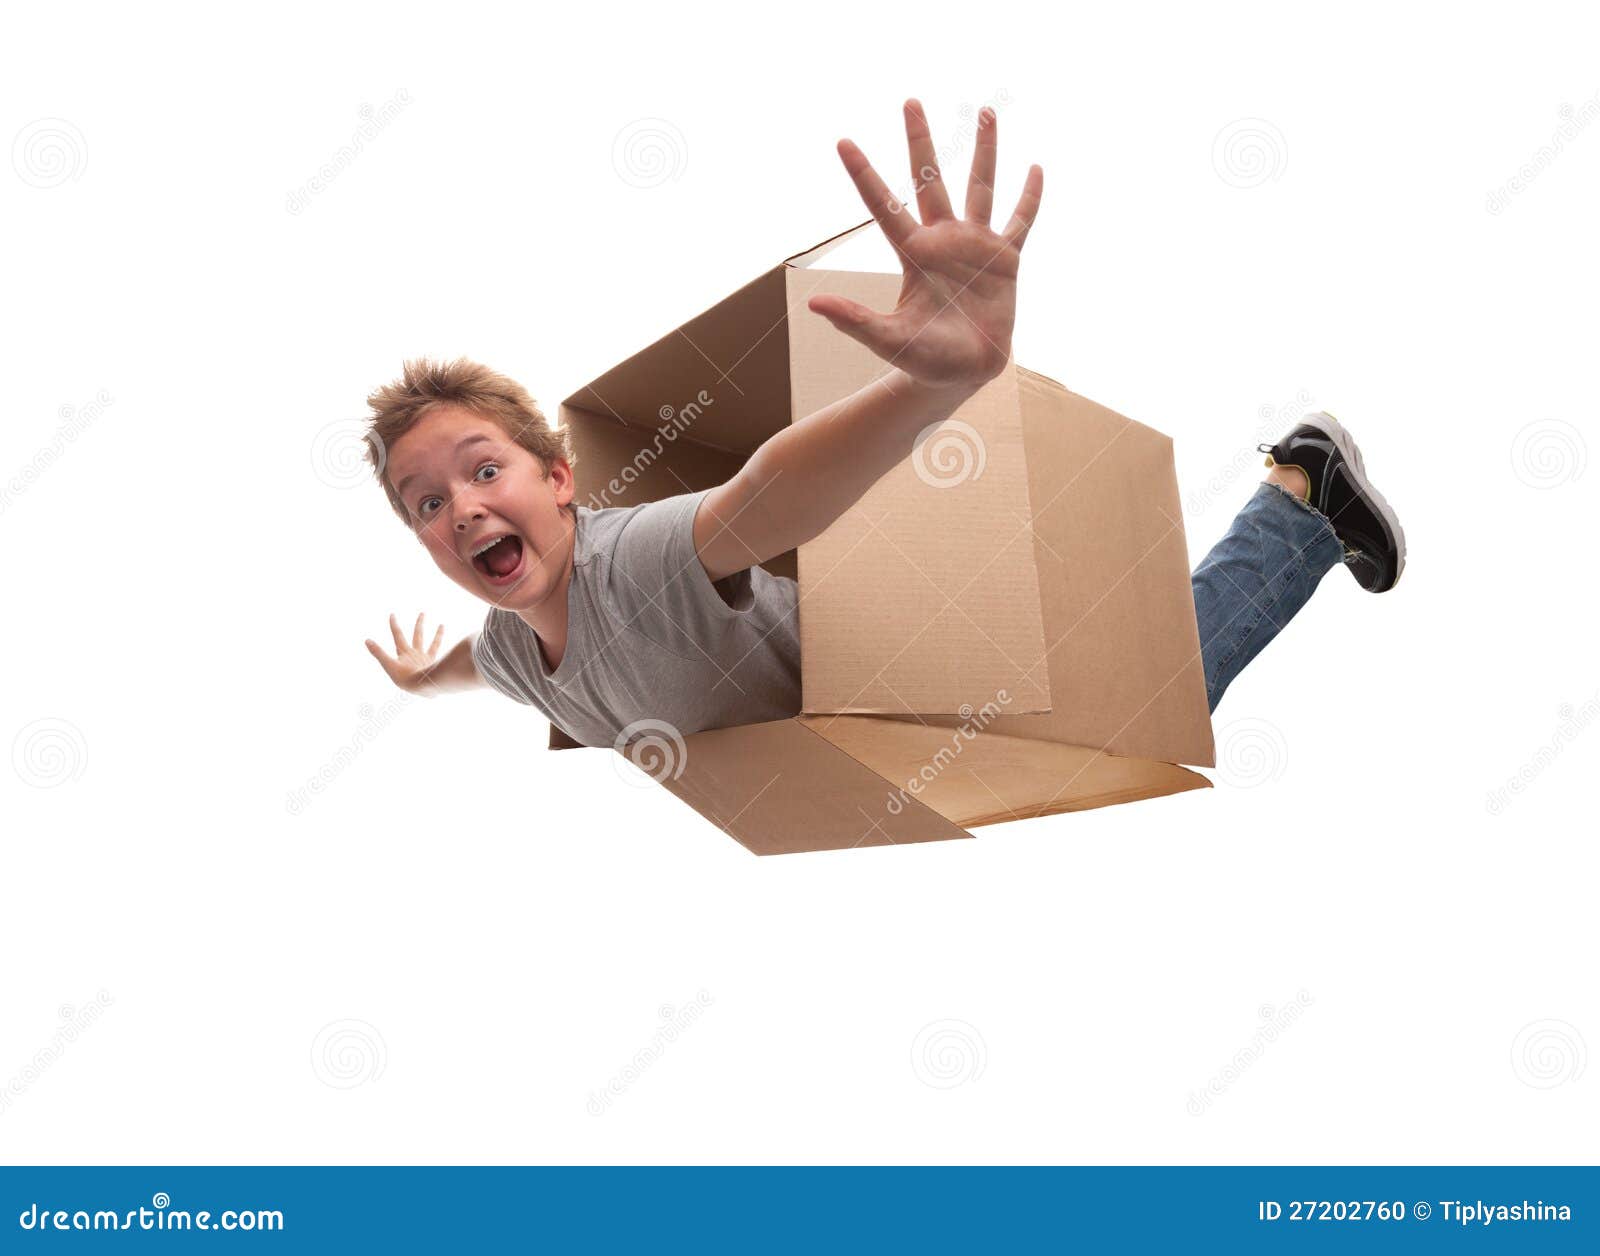 Мальчик в коробке 2009. Мальчик в коробке. Мальчик в картонной коробке. Мальчик из коробки. Коробка в коробке для мальчиков.